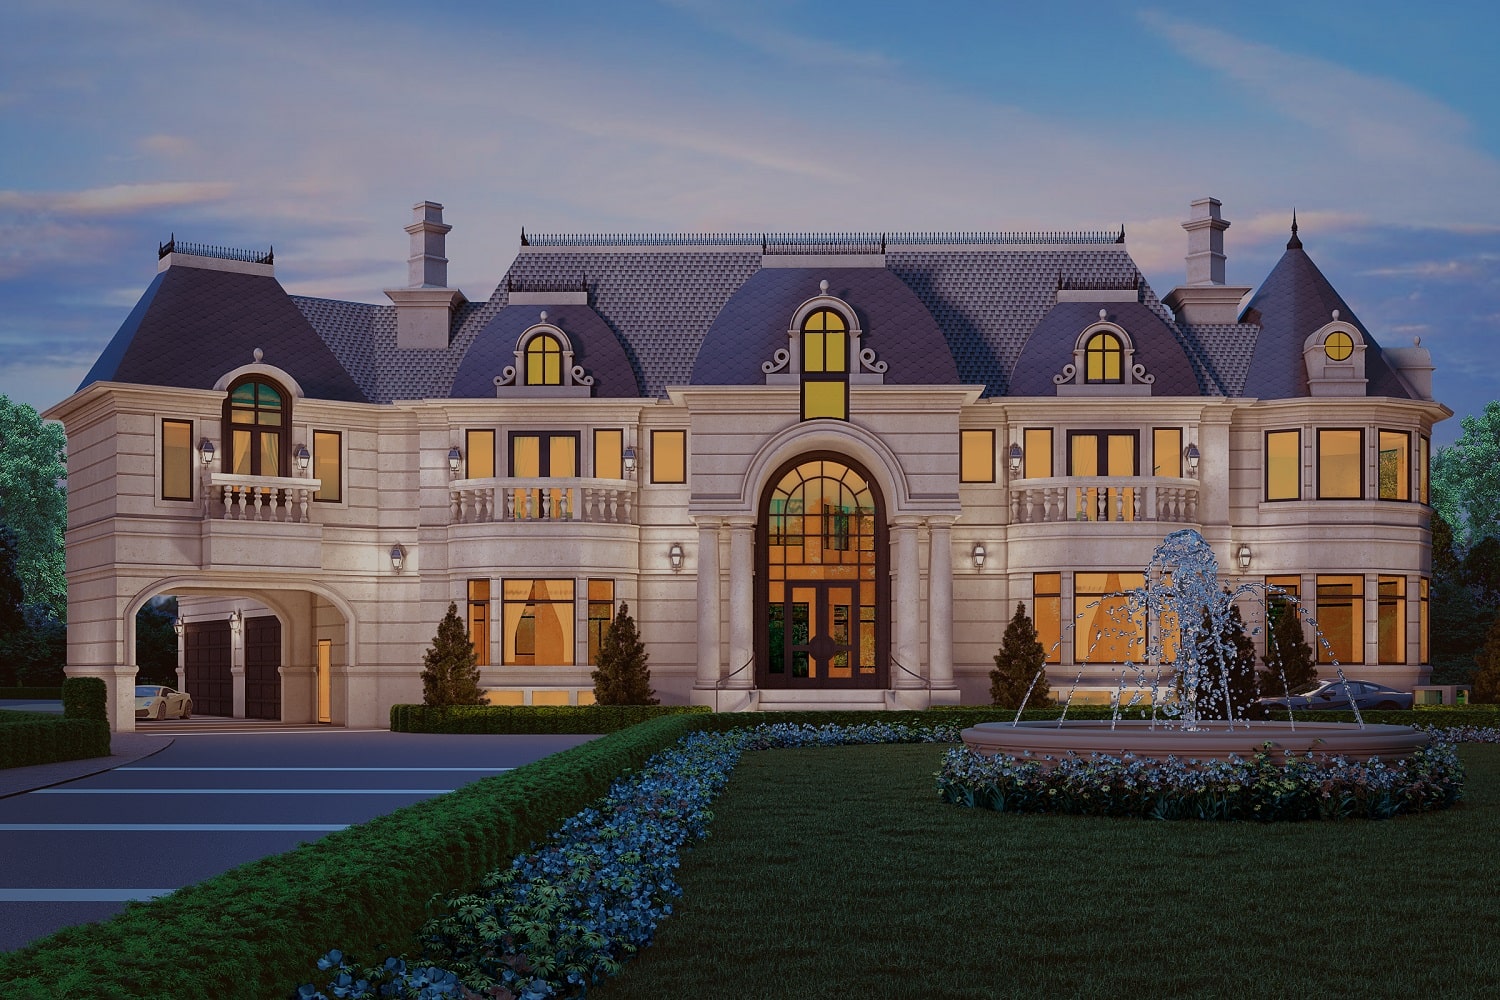 Luxurious Villa Center View 3D Exterior Rendering